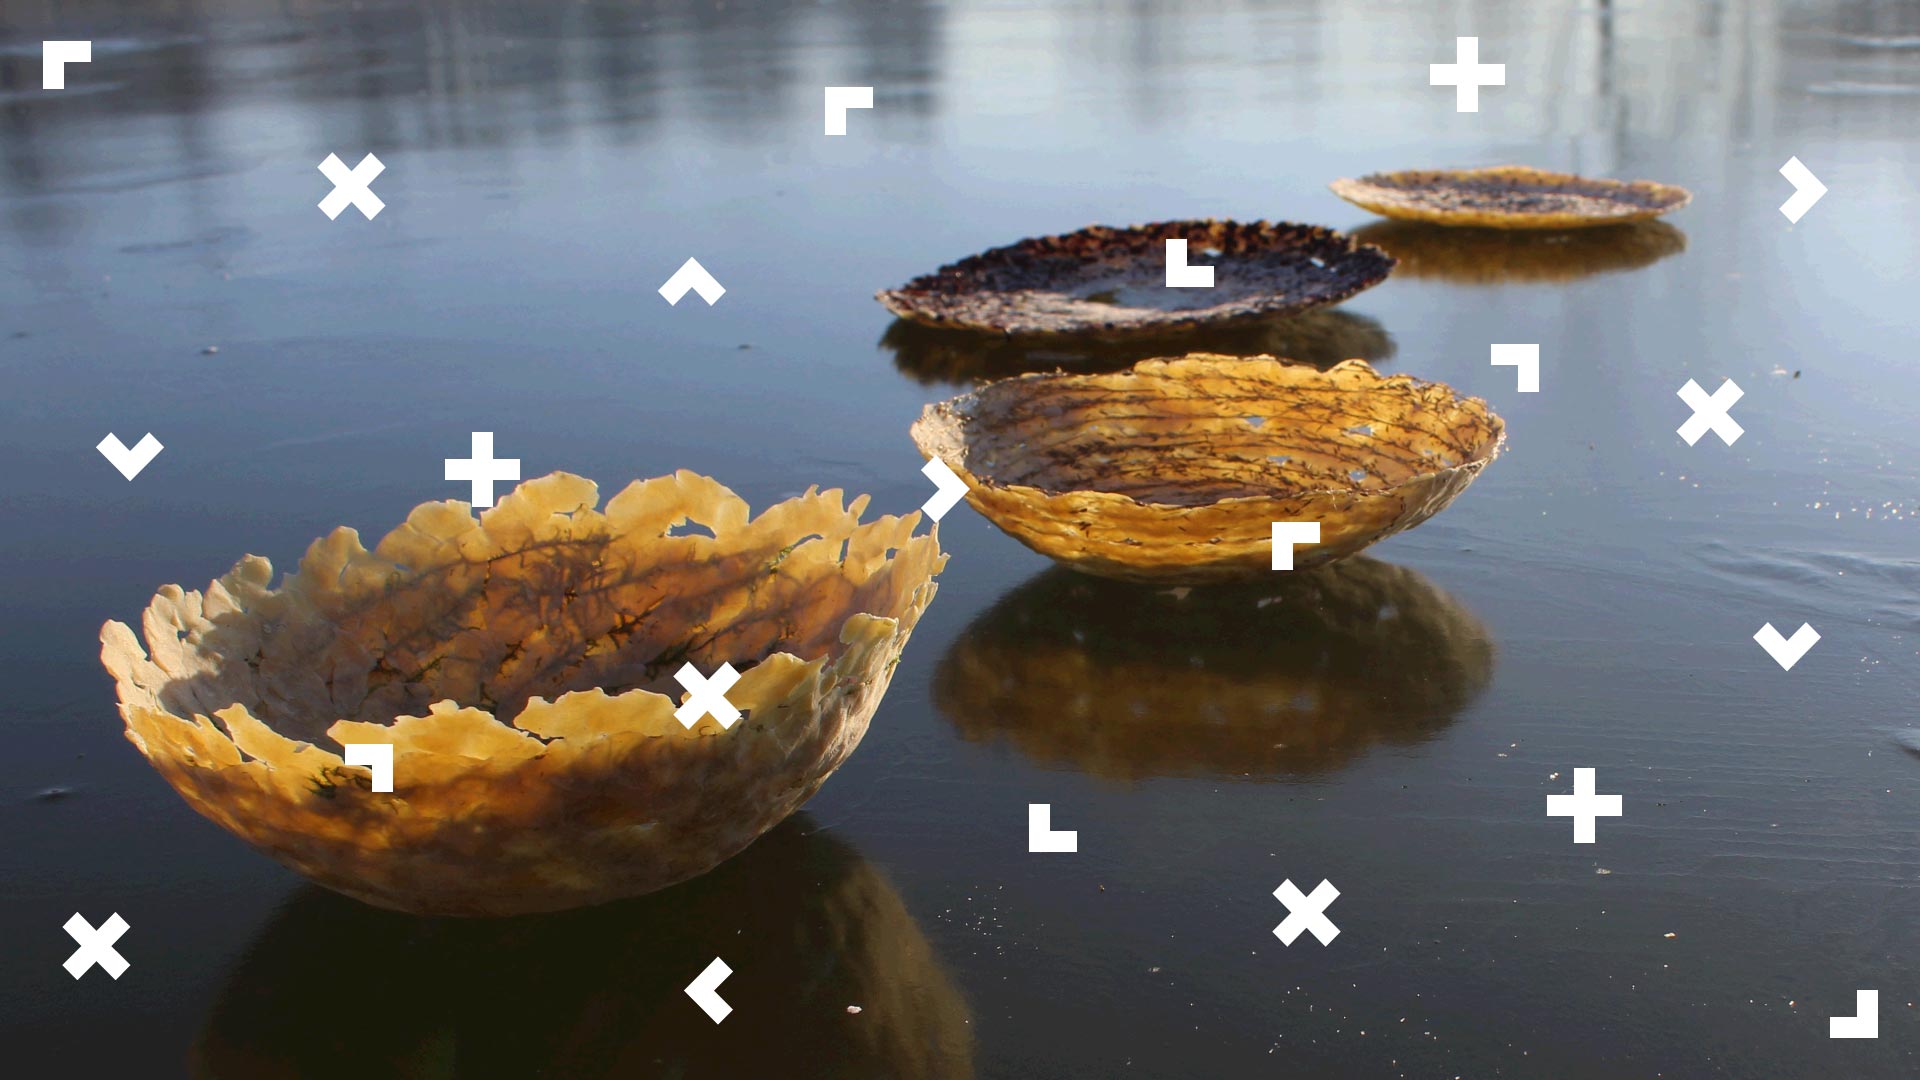 Na wodzie unoszą się cztery półokrągłe łódki przypominające głębokie talerze. Są wykonane z naturalnych elementów, prawdopodobnie jest to odlew z gliny.